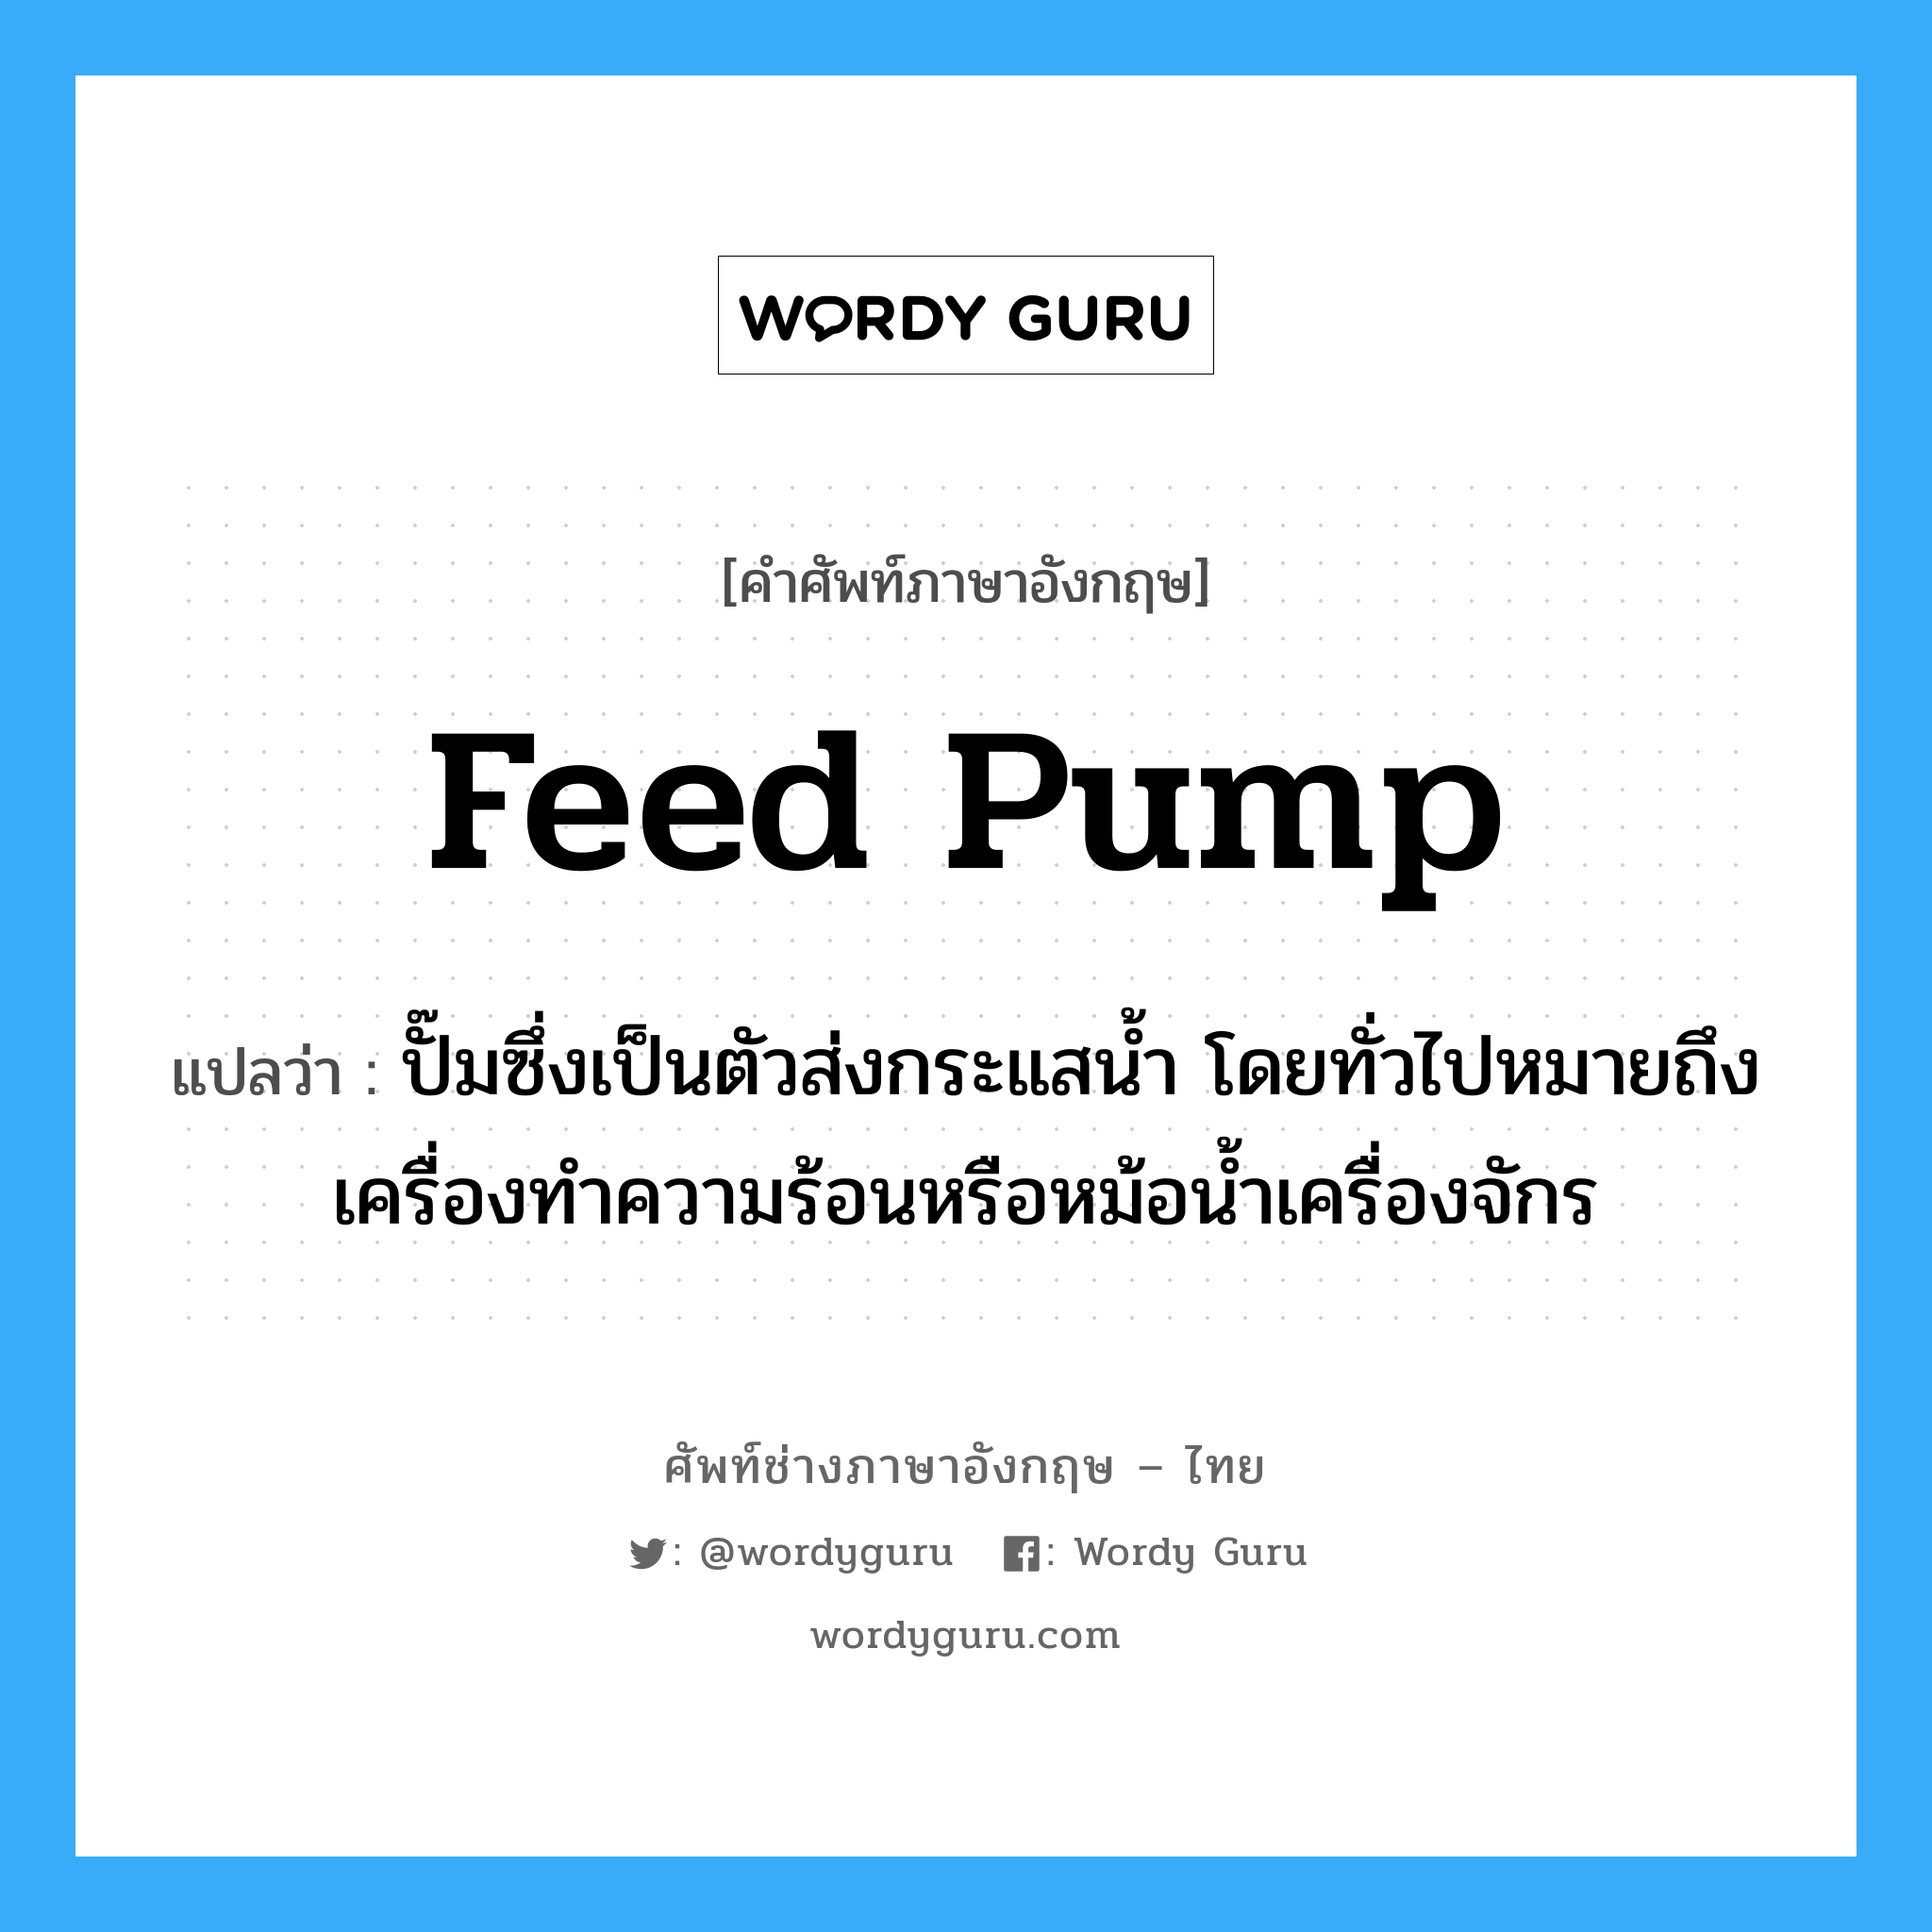 feed pump แปลว่า?, คำศัพท์ช่างภาษาอังกฤษ - ไทย feed pump คำศัพท์ภาษาอังกฤษ feed pump แปลว่า ปั๊มซึ่งเป็นตัวส่งกระแสน้ำ โดยทั่วไปหมายถึงเครื่องทำความร้อนหรือหม้อน้ำเครื่องจักร